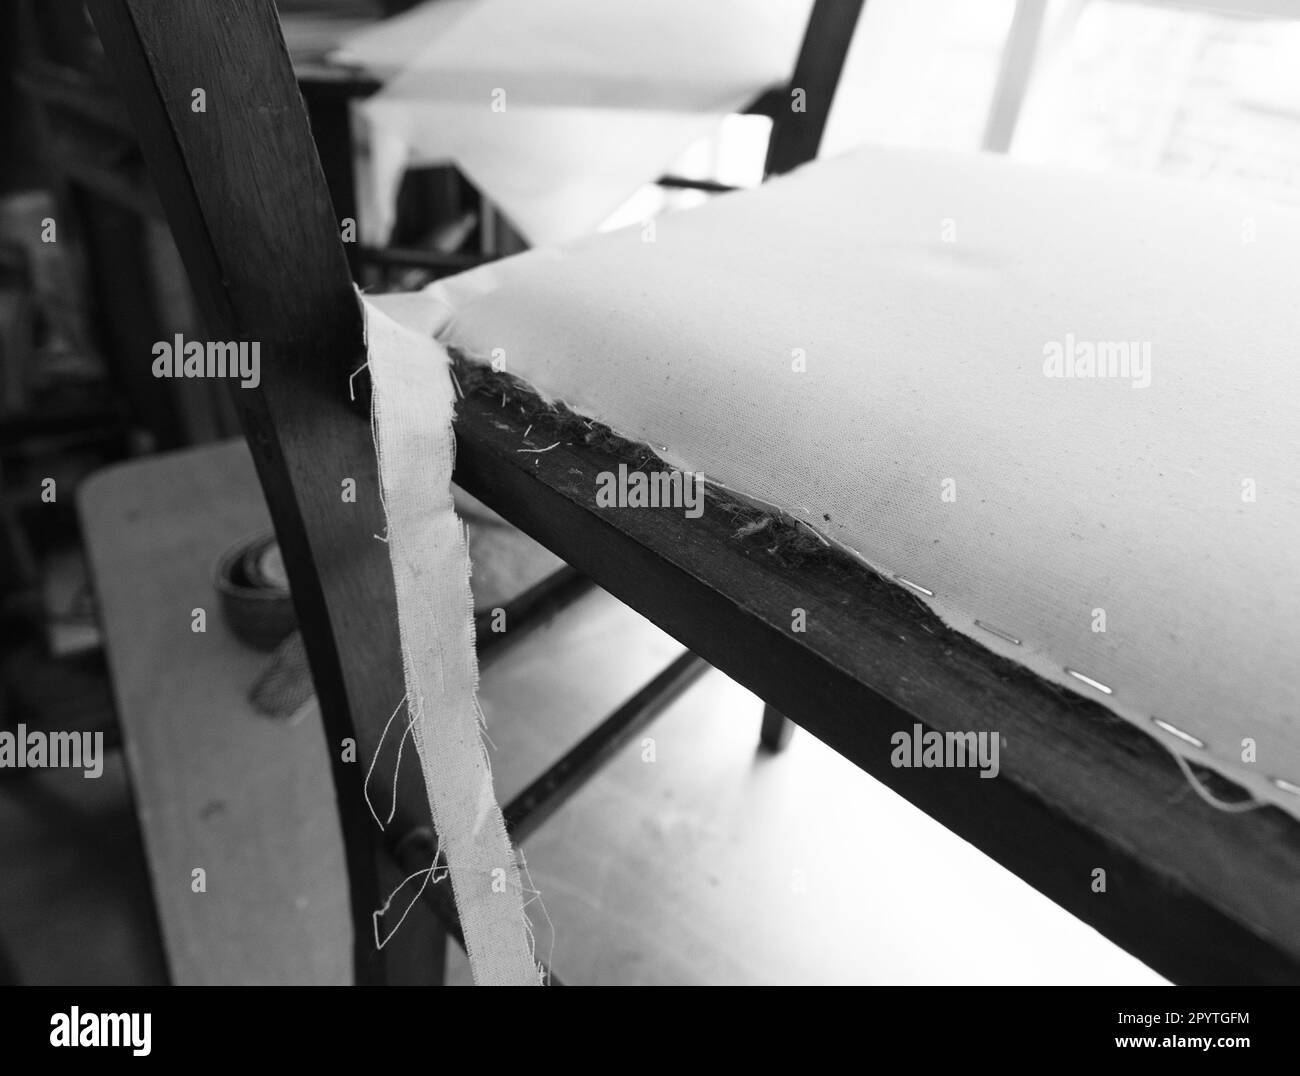 Les étapes impliquées dans le rembourrage d'une simple chaise de salle à manger. Images en noir et blanc. Banque D'Images